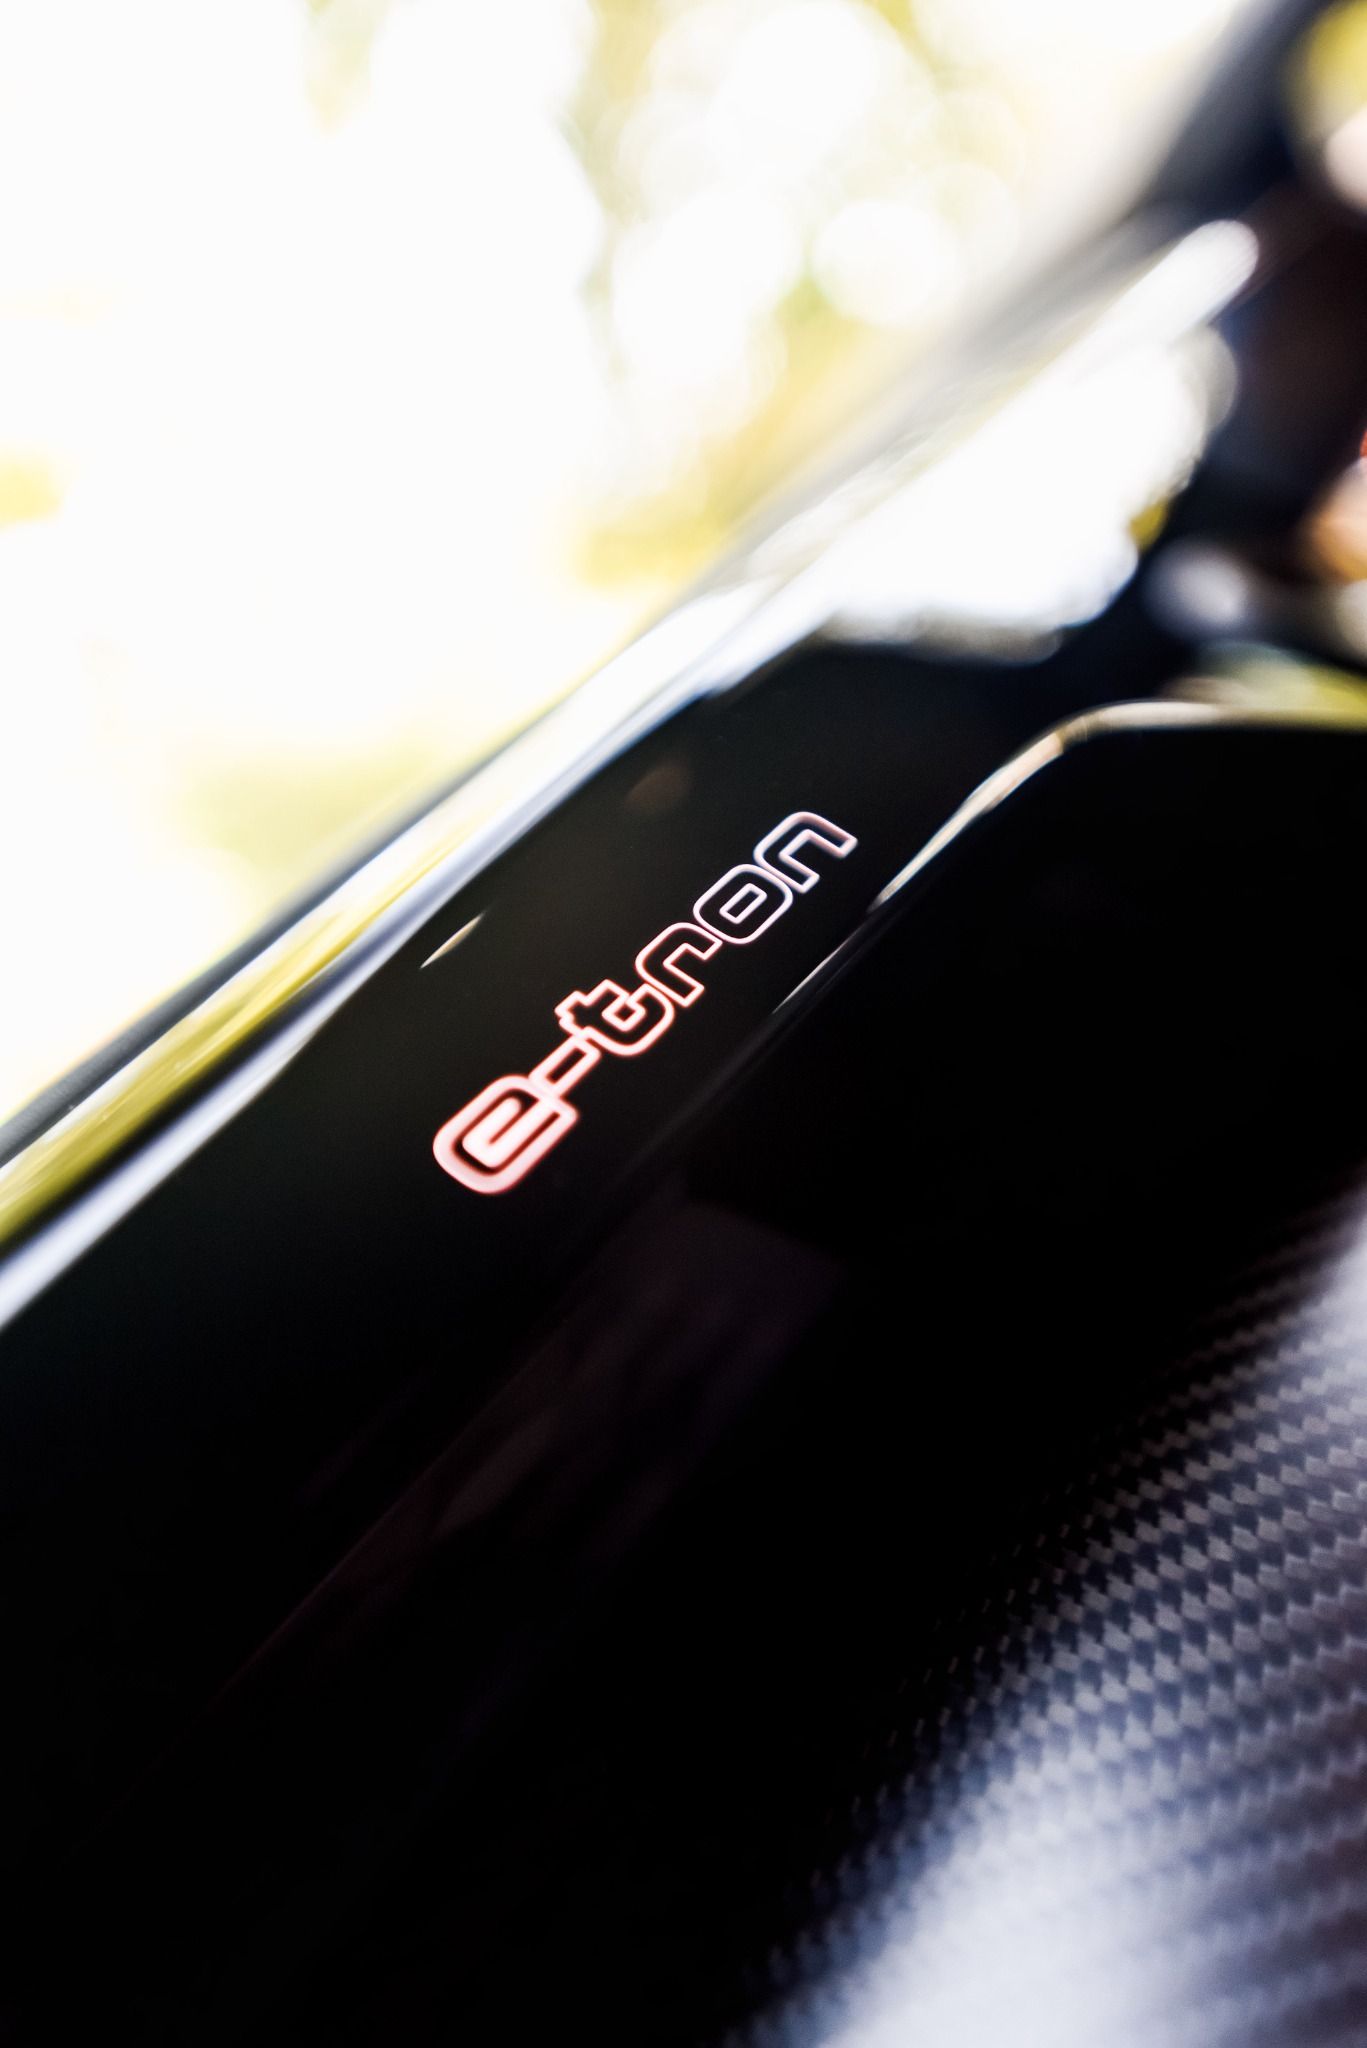 e-tron badging in an Audi RE e-Tron GT